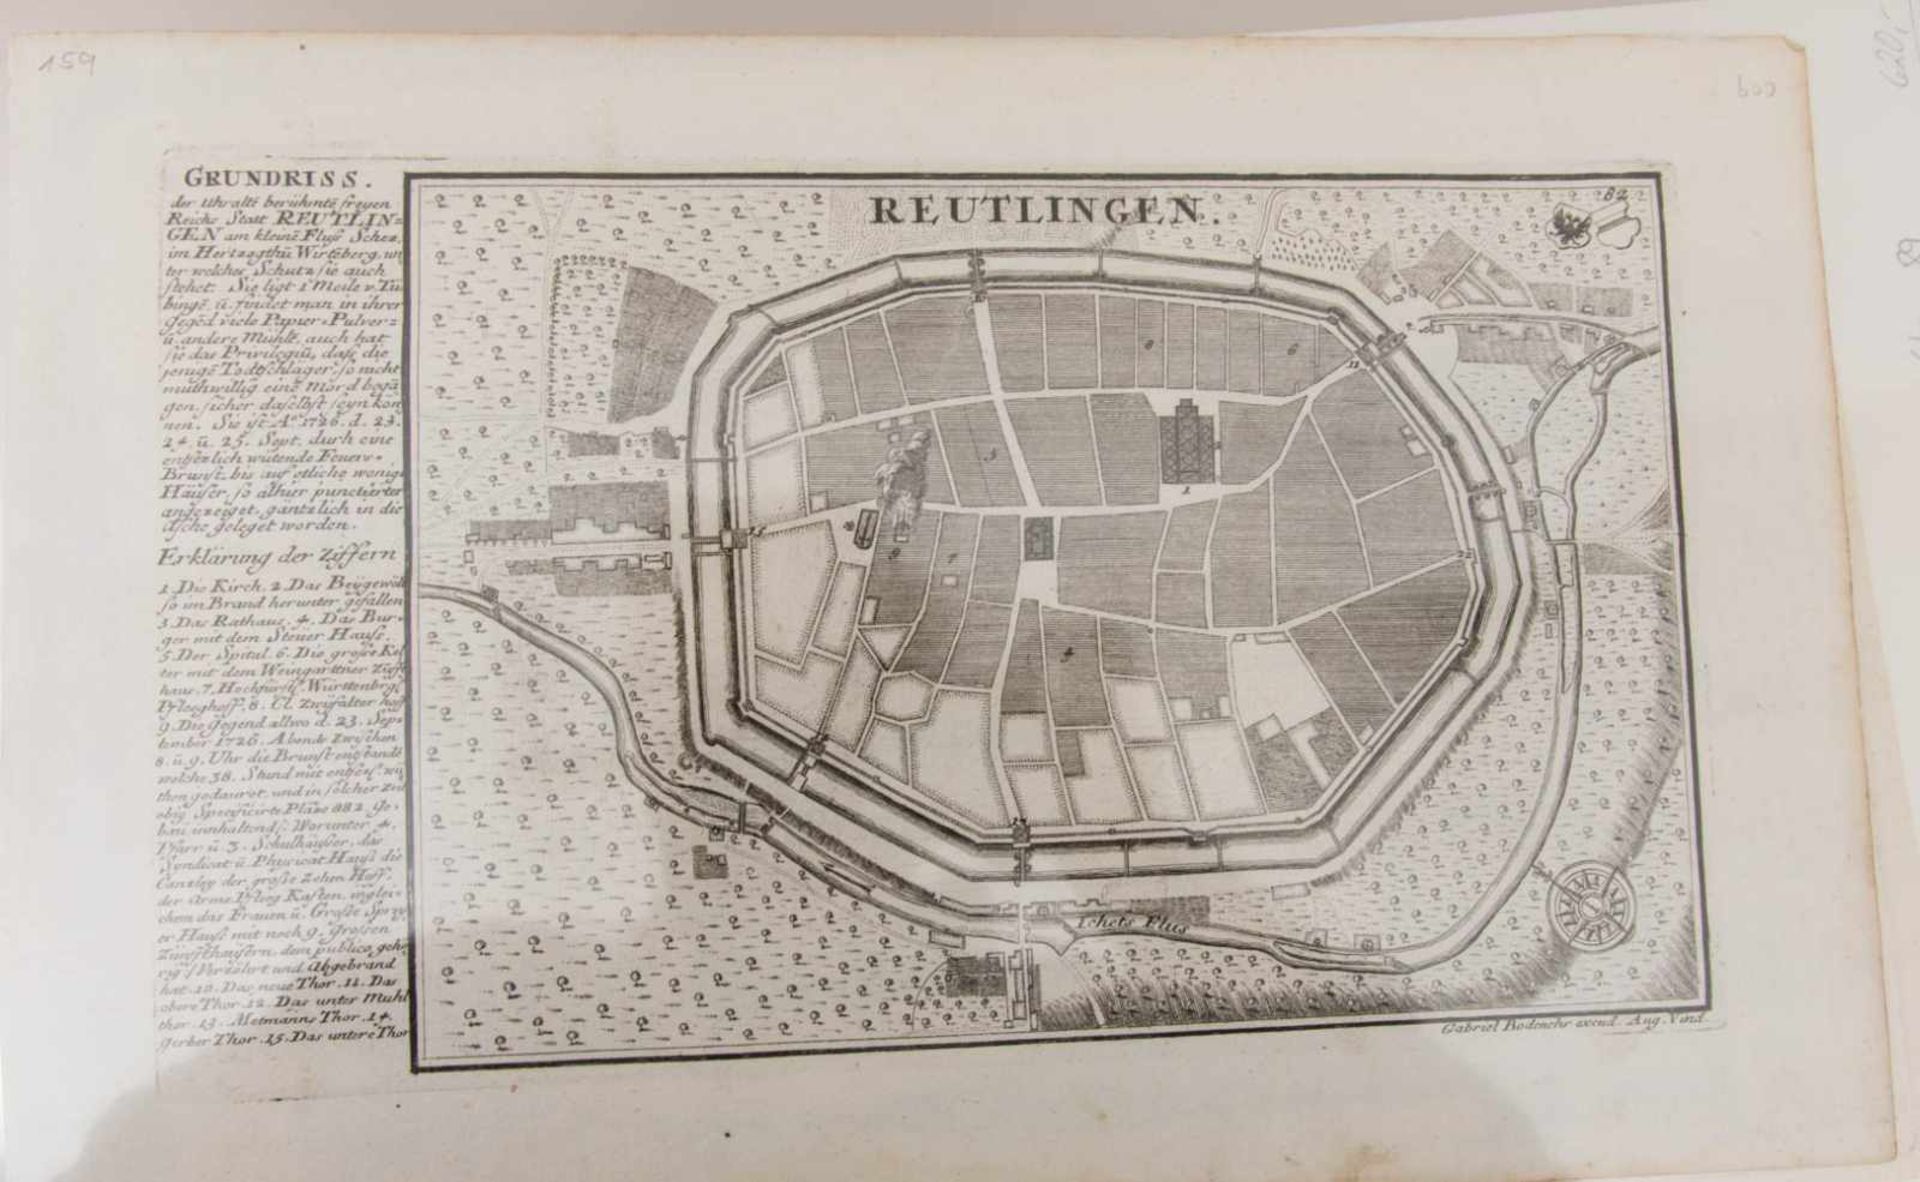 GRAFIKMAPPE, Reutlingen, 19. JhSolgfältig archivierte Mappe mit Zahlreichen Grafiken, teilw. - Image 4 of 18